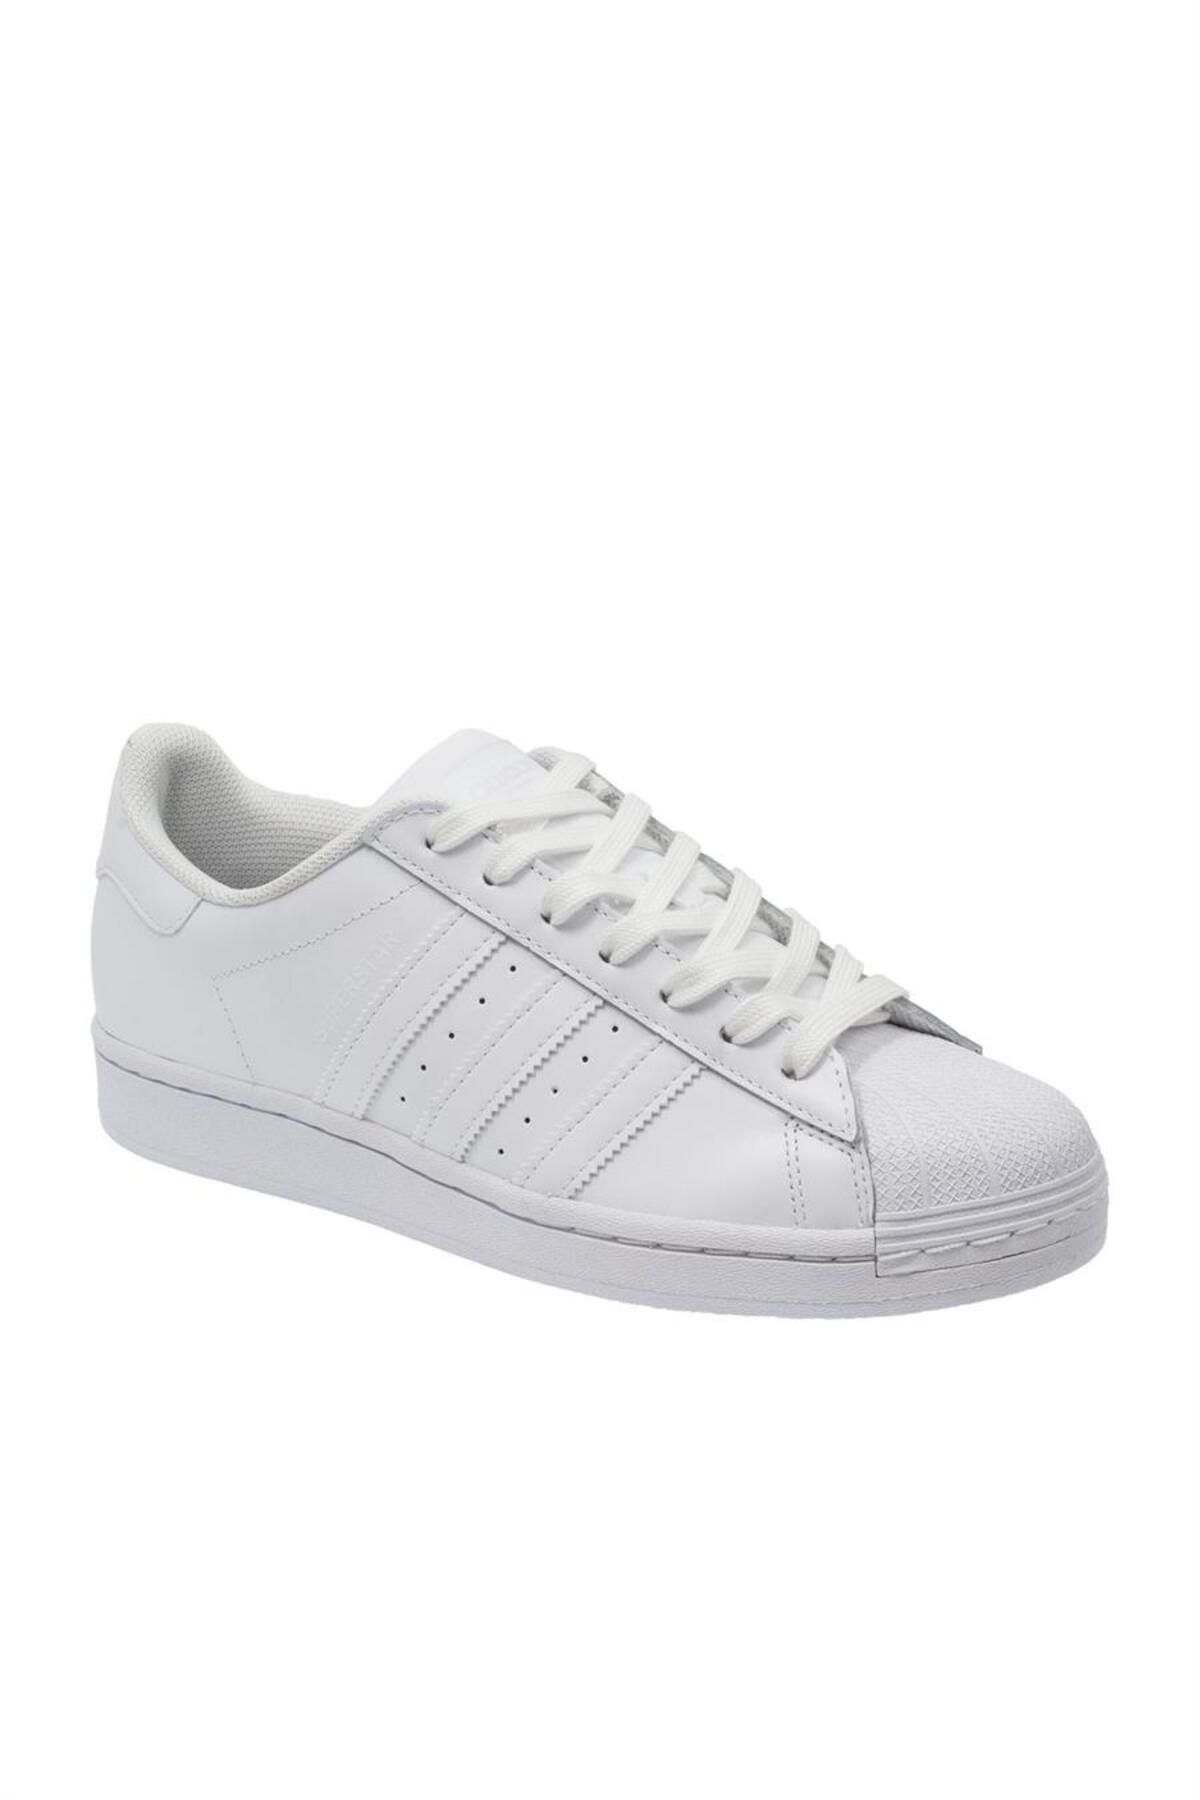 Eg4960-k Superstar Women's Sports Shoes White